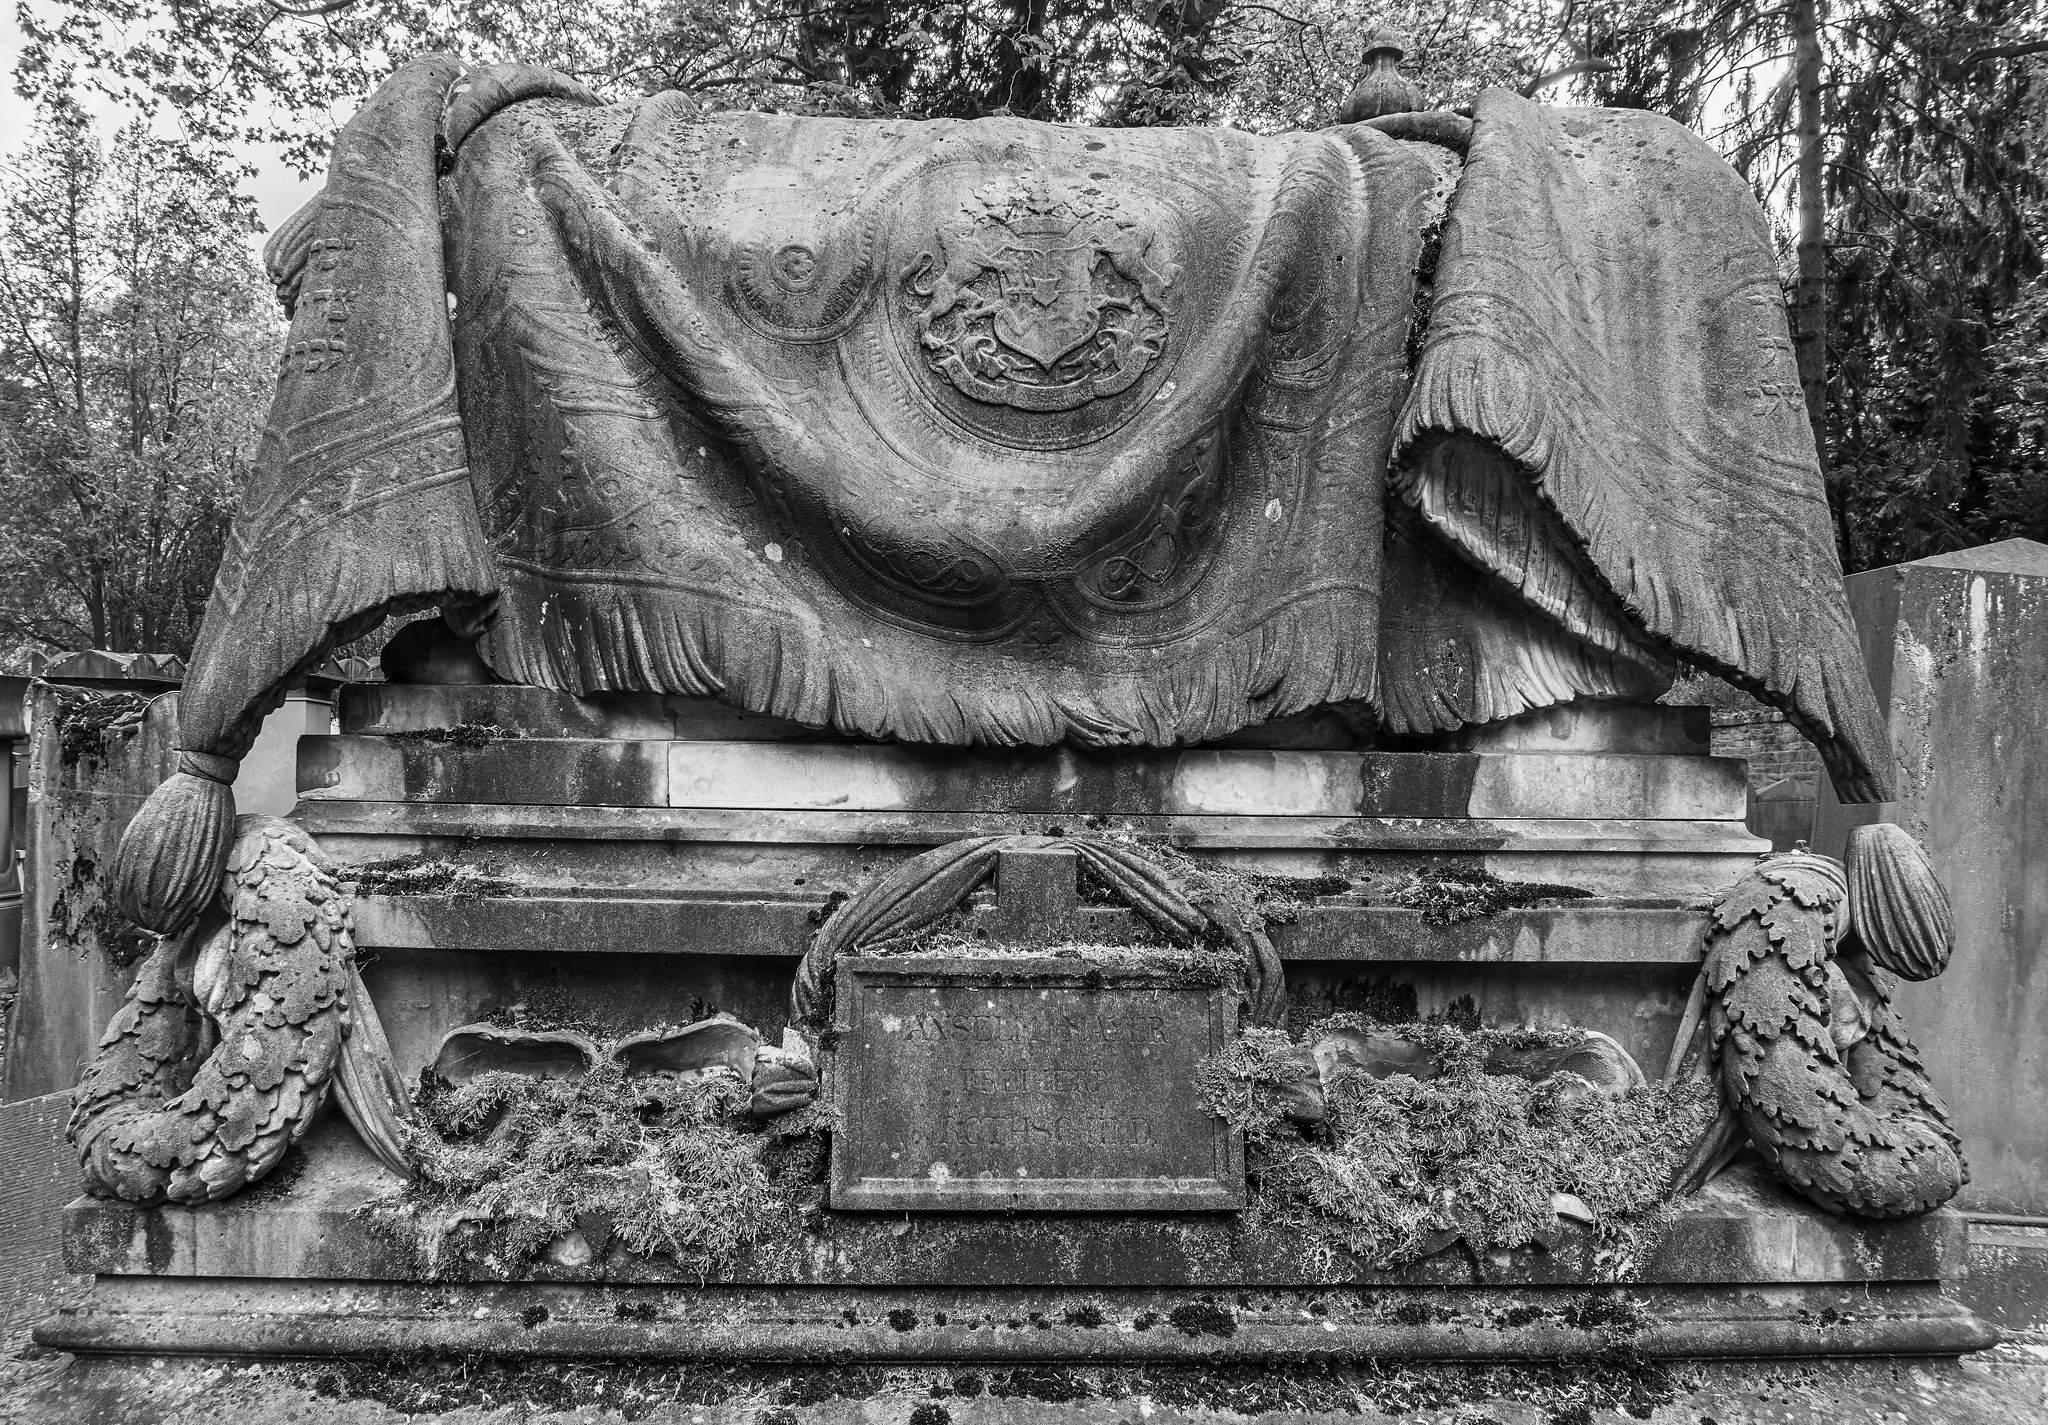 Rothschild sarcophagus